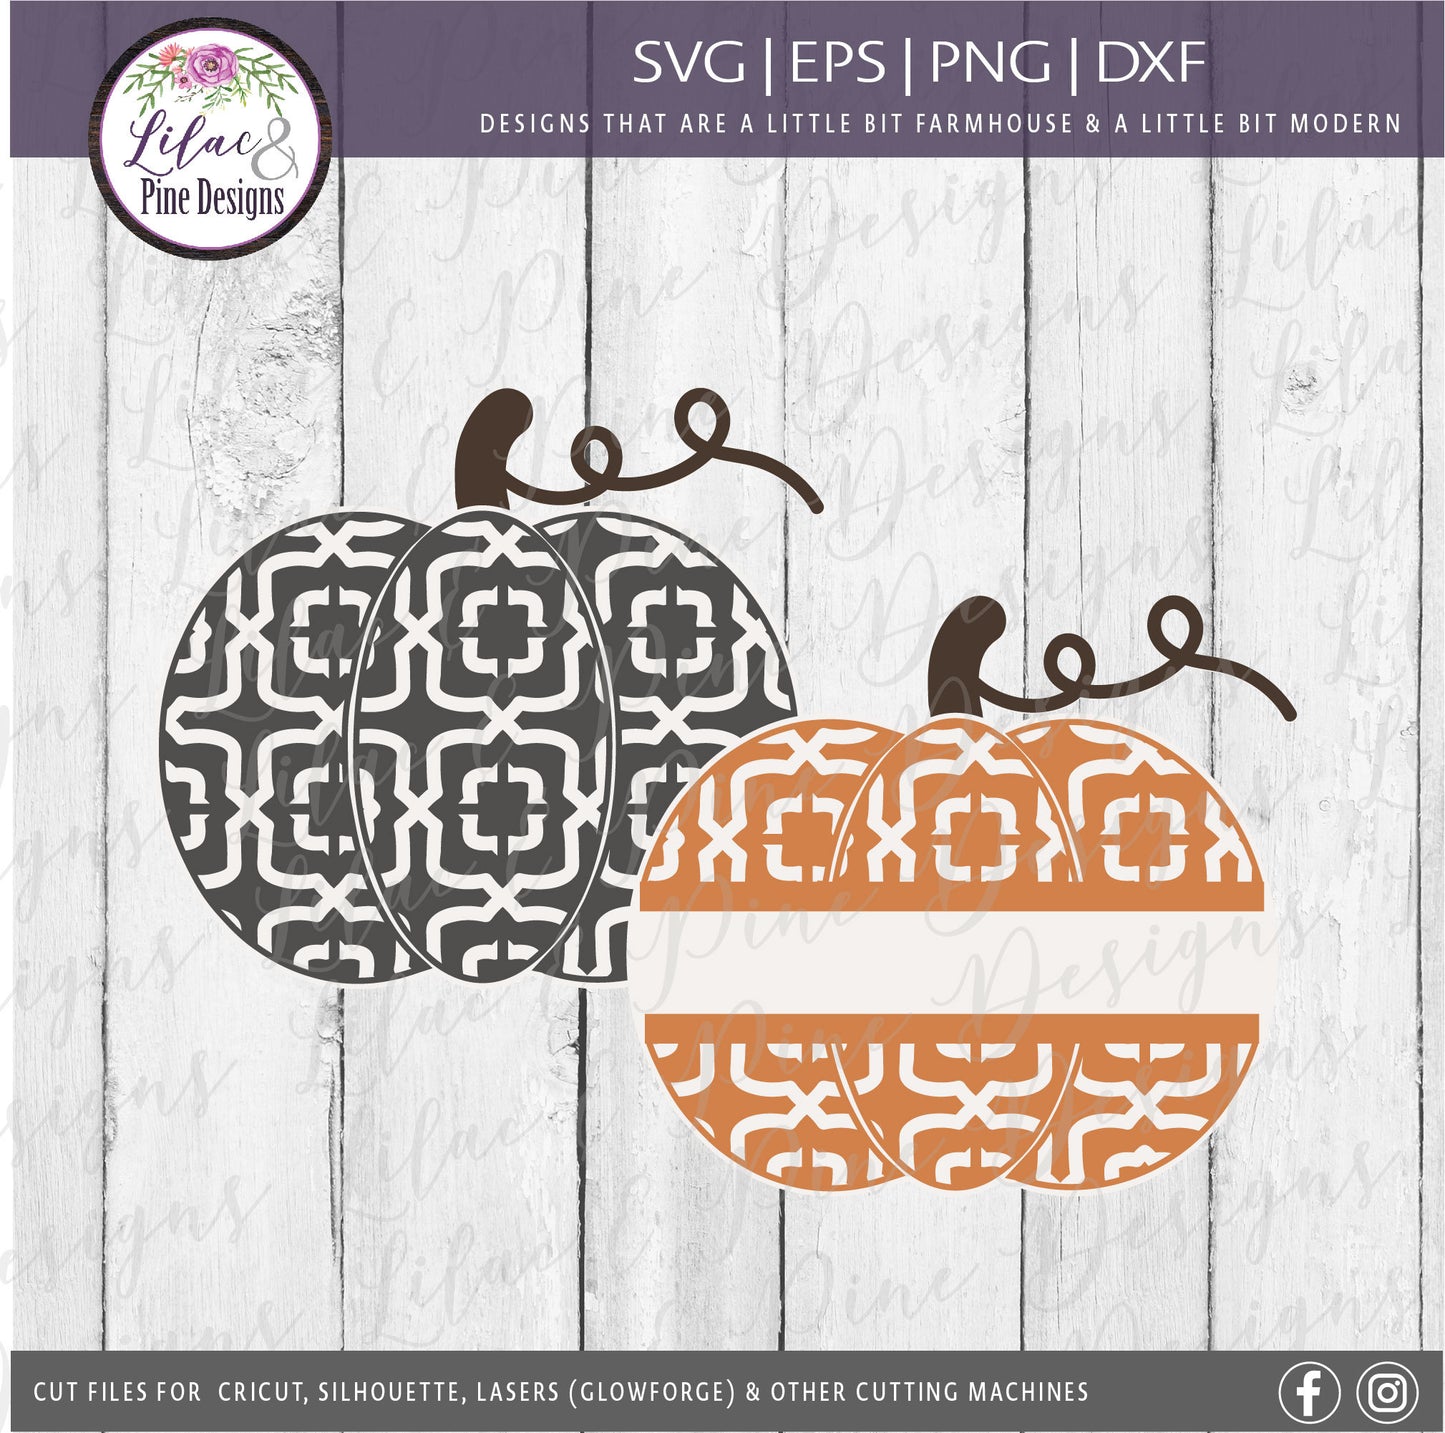 Patterned pumpkin bundle SVG, Pumpkin monogram bundle SVG, Patterned Fall cut files, Pumpkin decor Svg, Tier tray set, Glowforge laser file